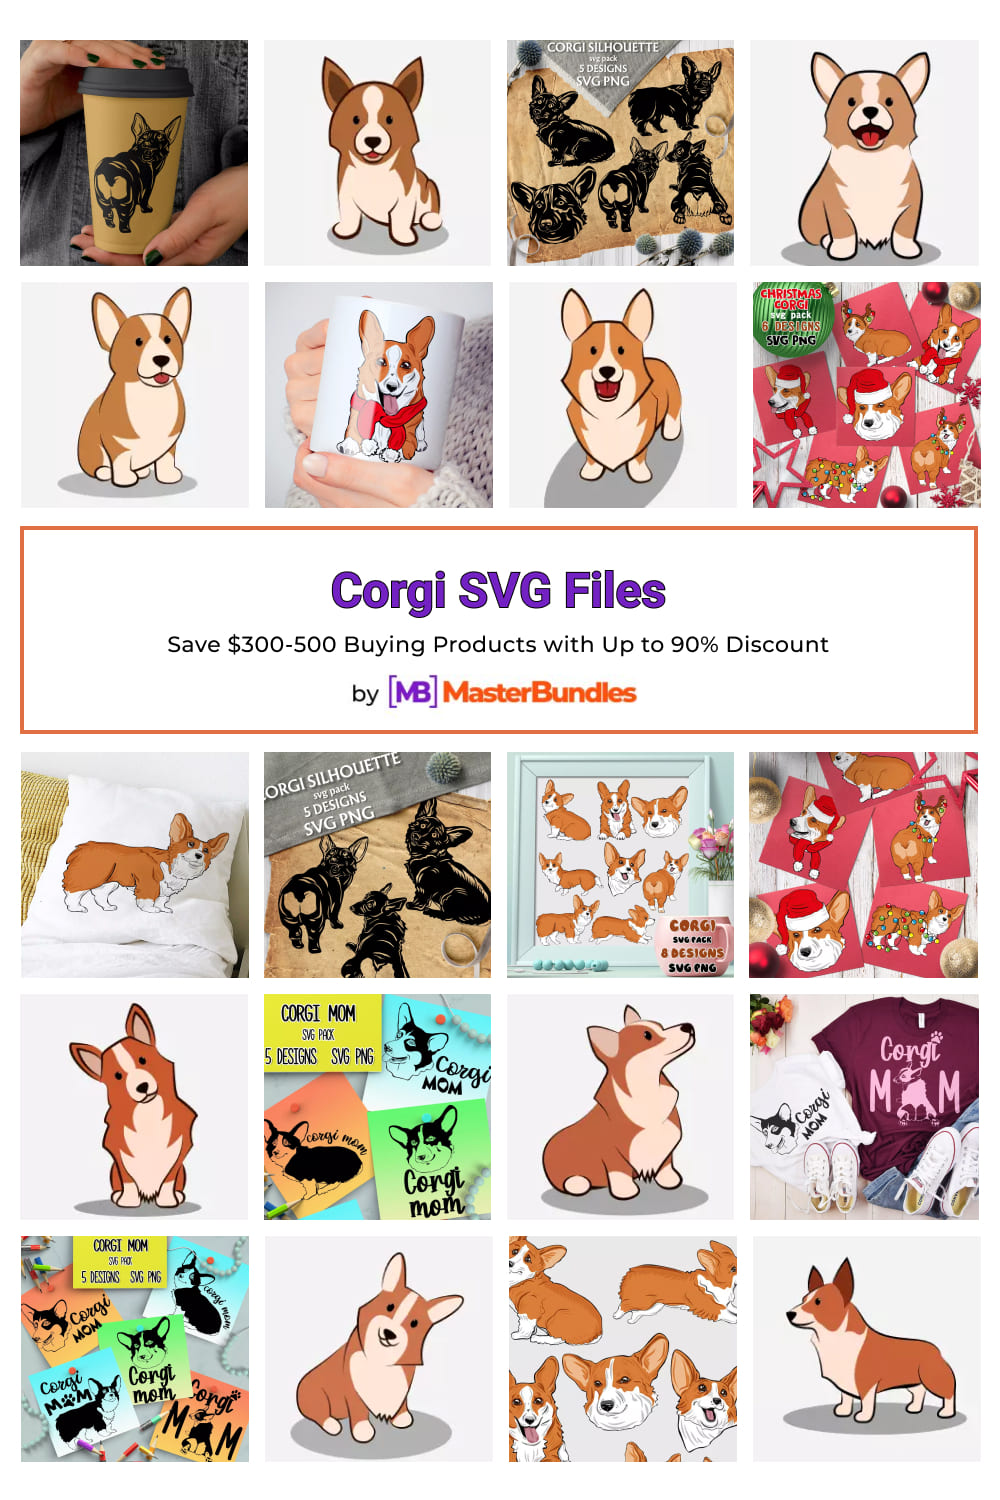 Corgi SVG Files for Pinterest.